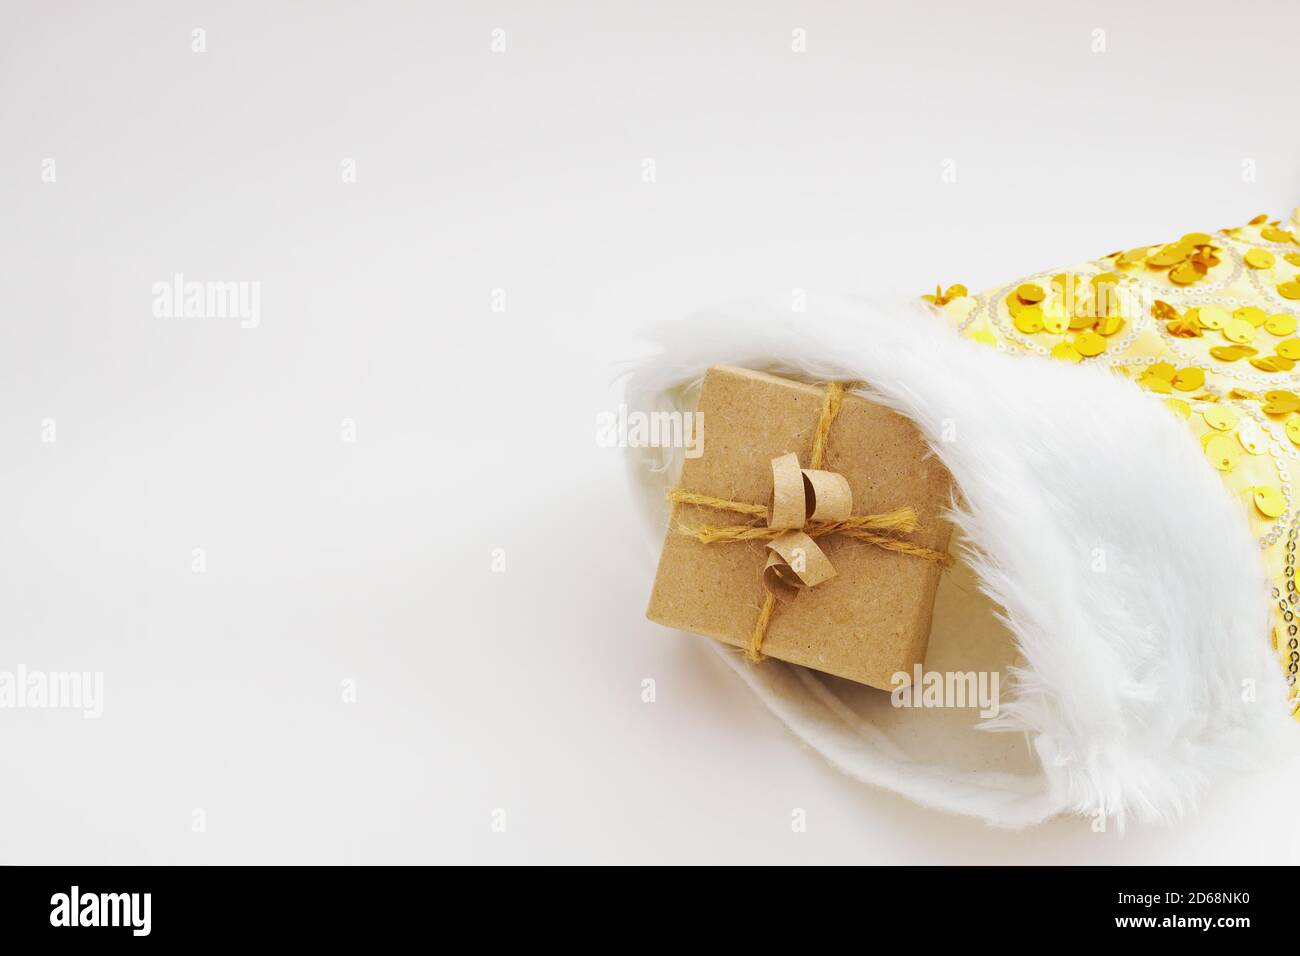 Confezione regalo avvolta in carta kraft e corda di sacco legata in calza natalizia gialla su sfondo bianco Foto Stock